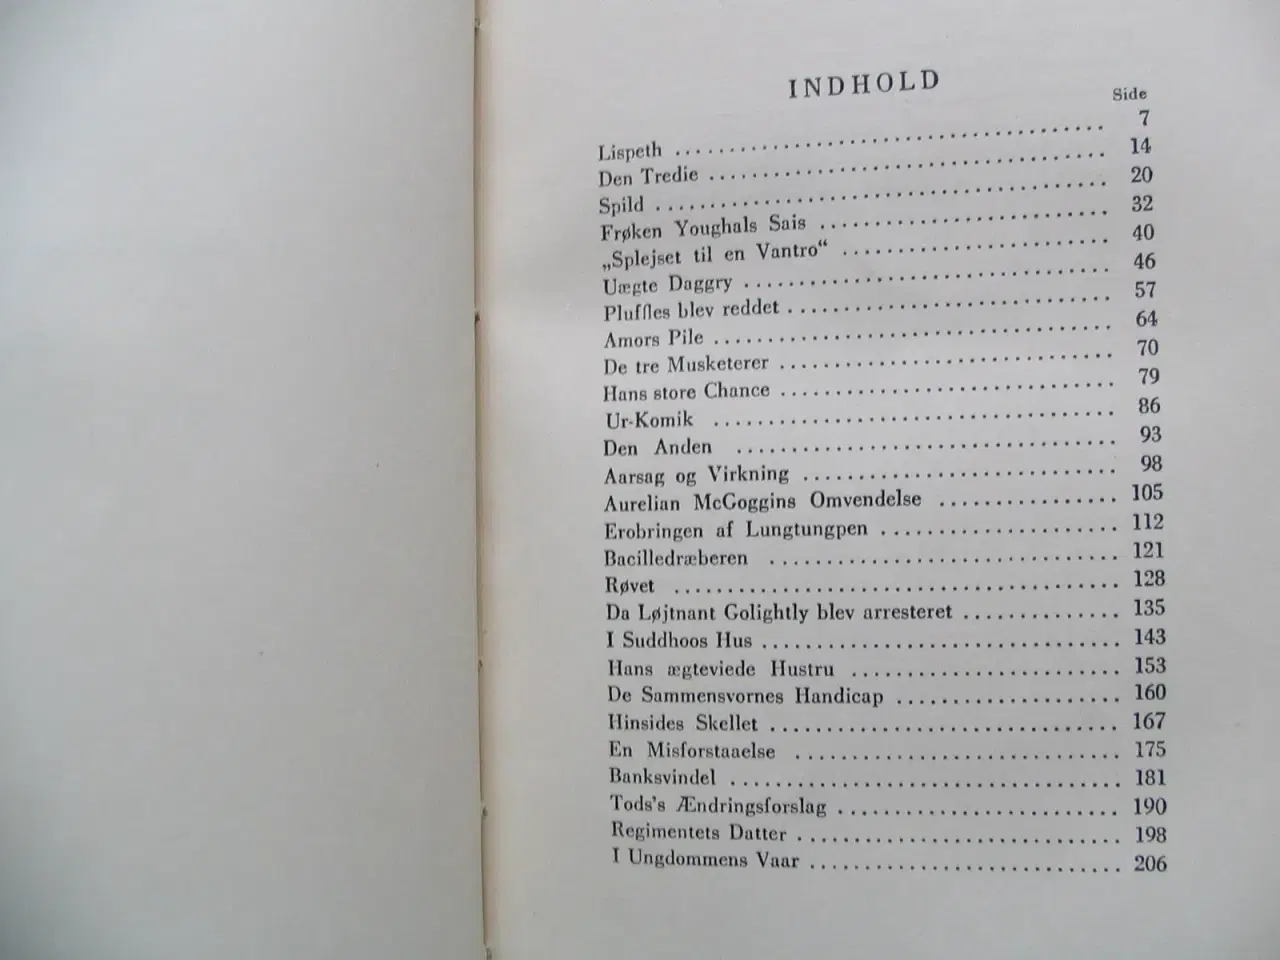 Billede 6 - Kipling (1865-1936). Værker i udvalg i 12 bind